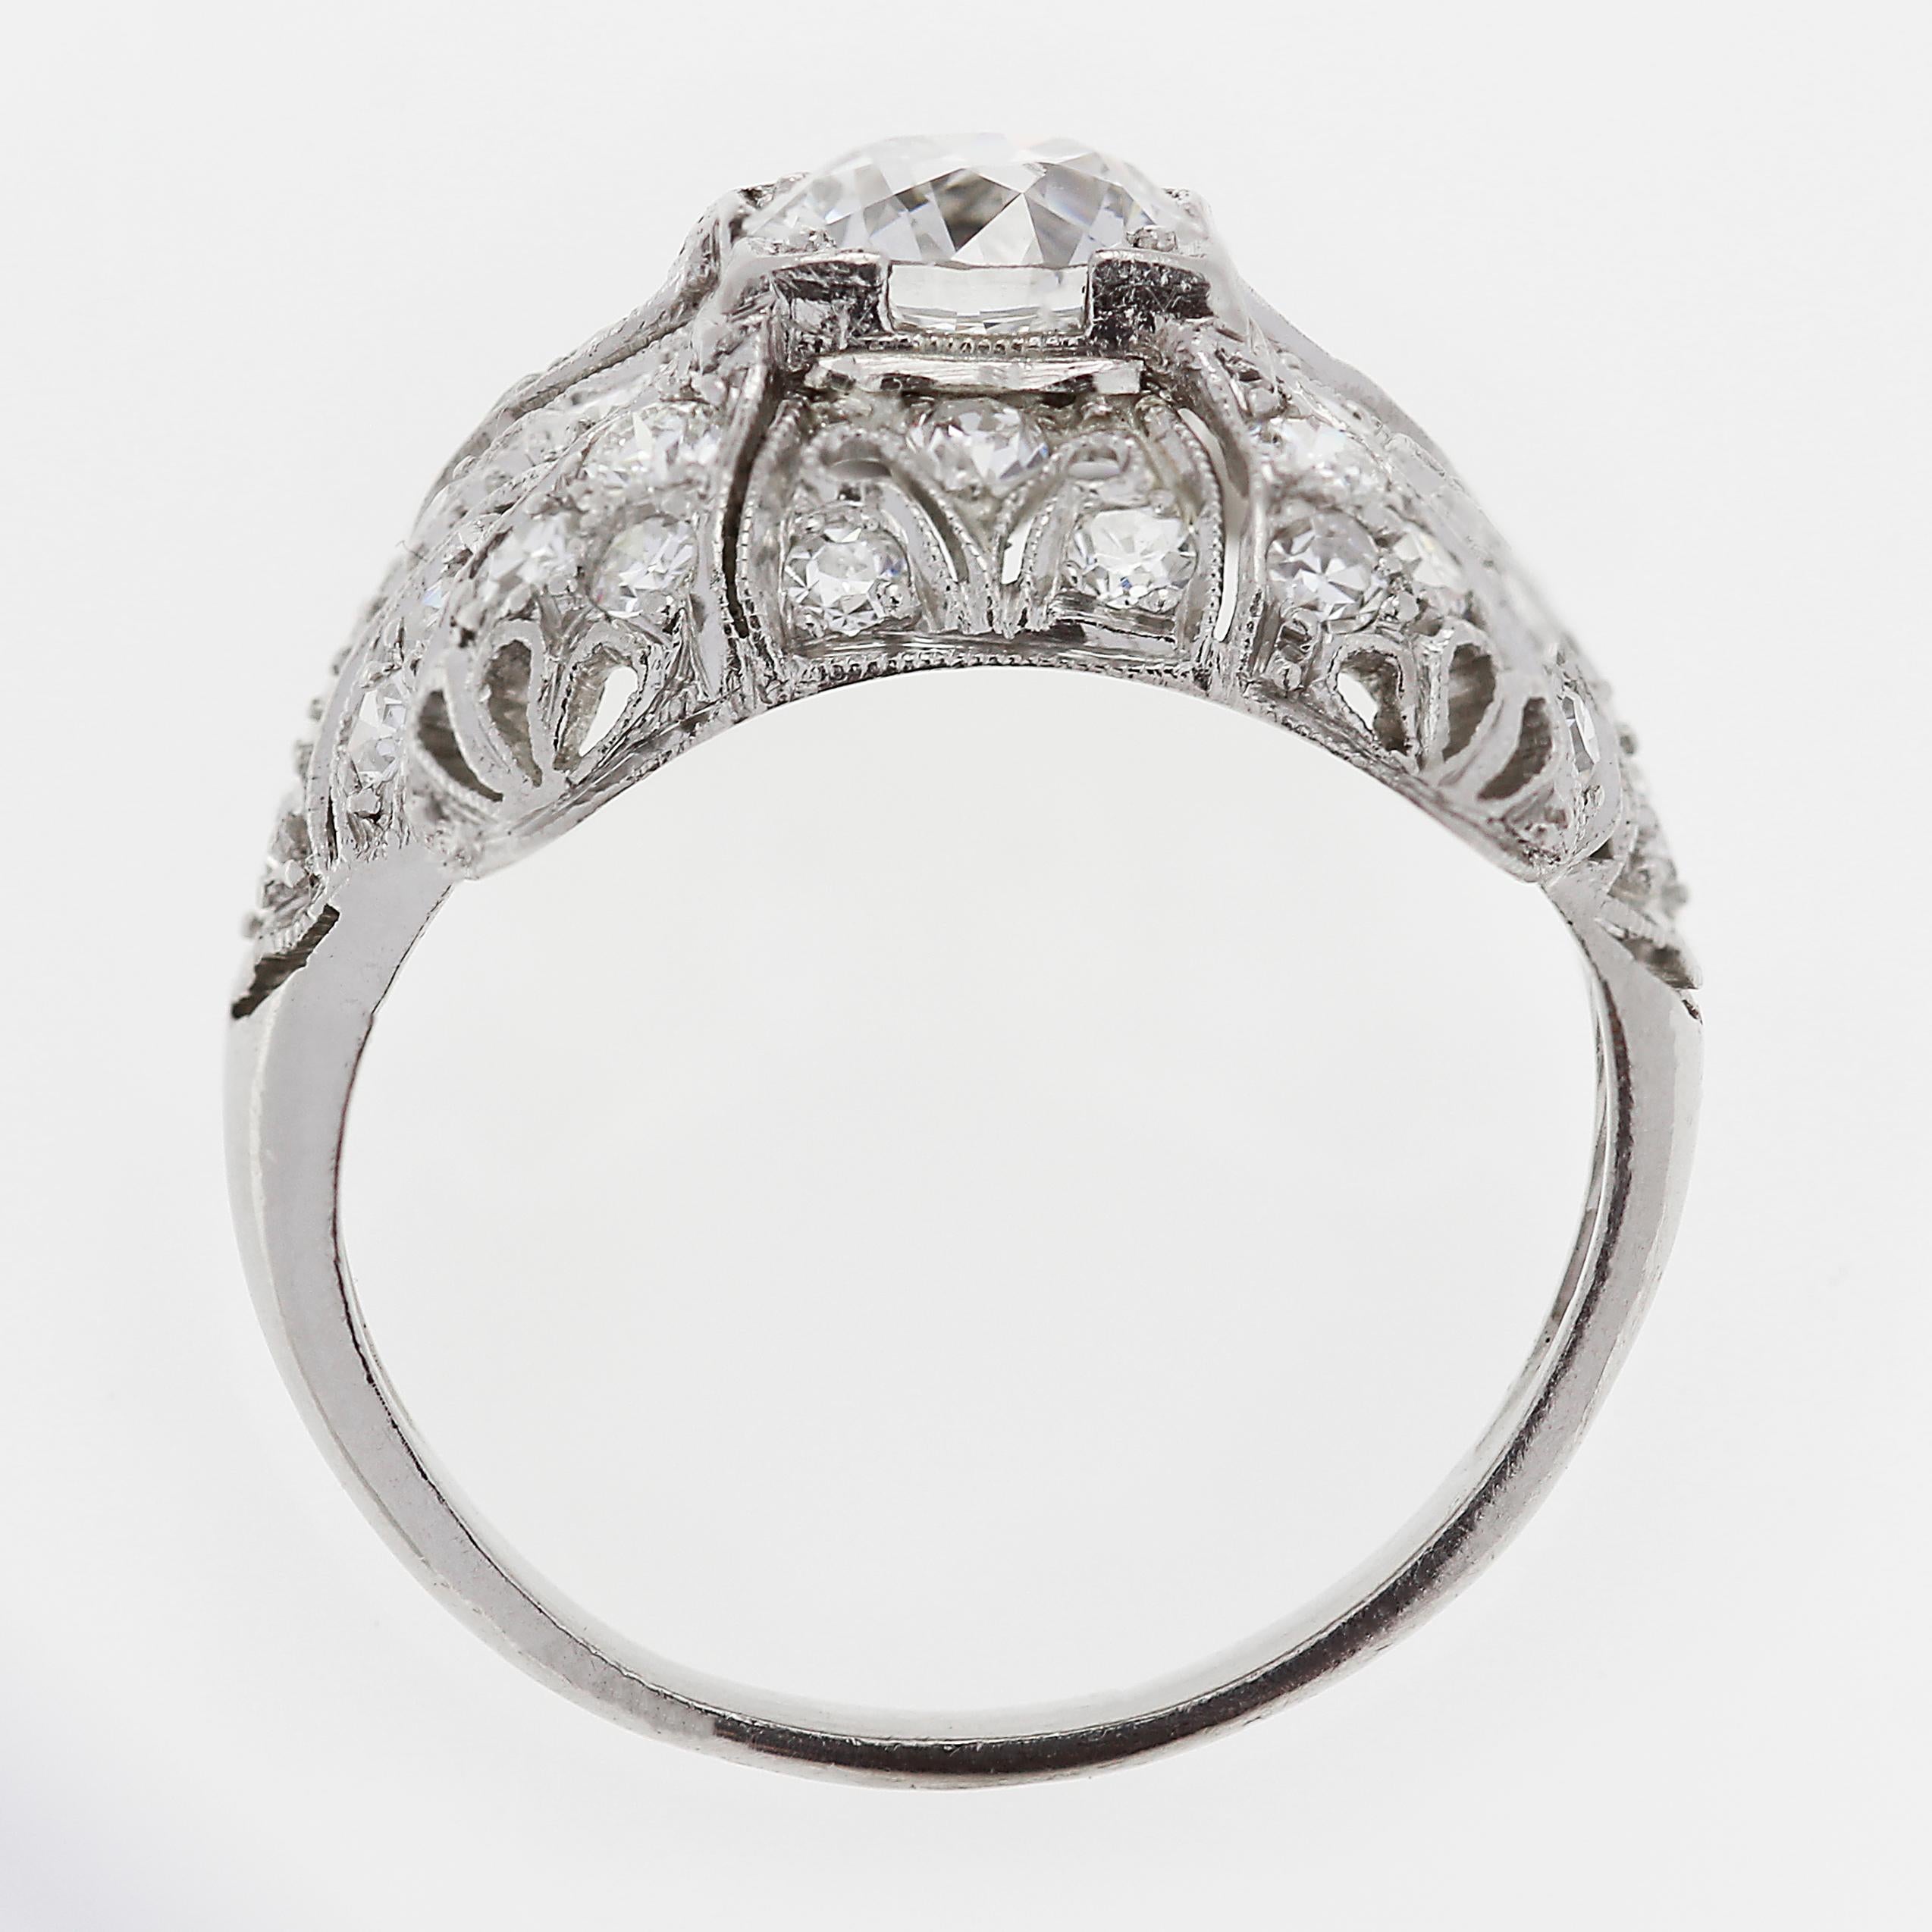 Women's Art Deco 1920s Old European Cut Diamond Ring Set in Platinum